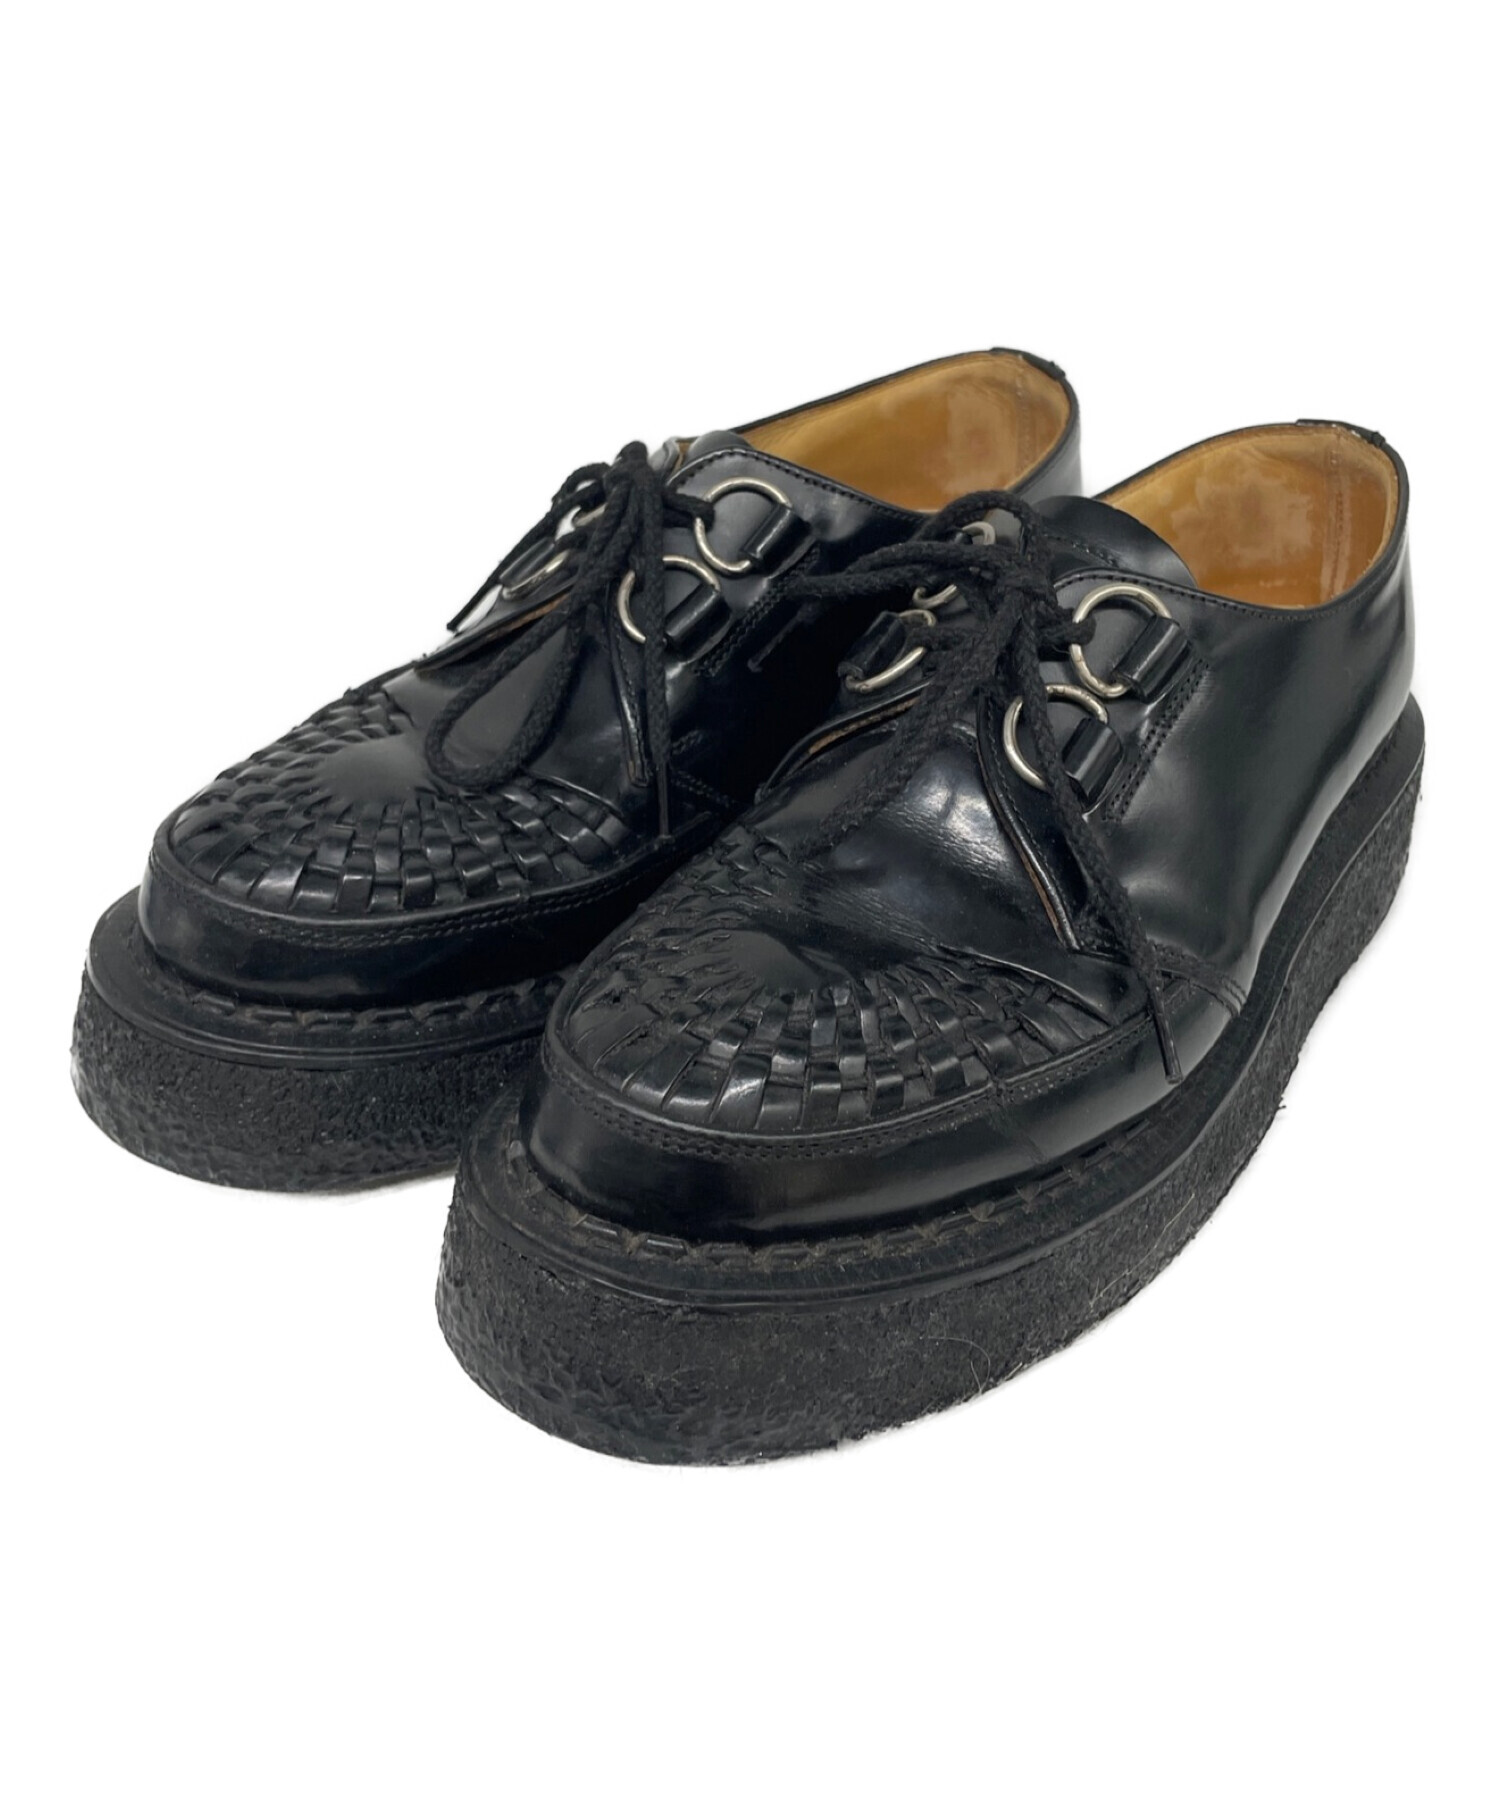 GEORGE'S ハンドメイドシューズカラーブラック - ローファー/革靴